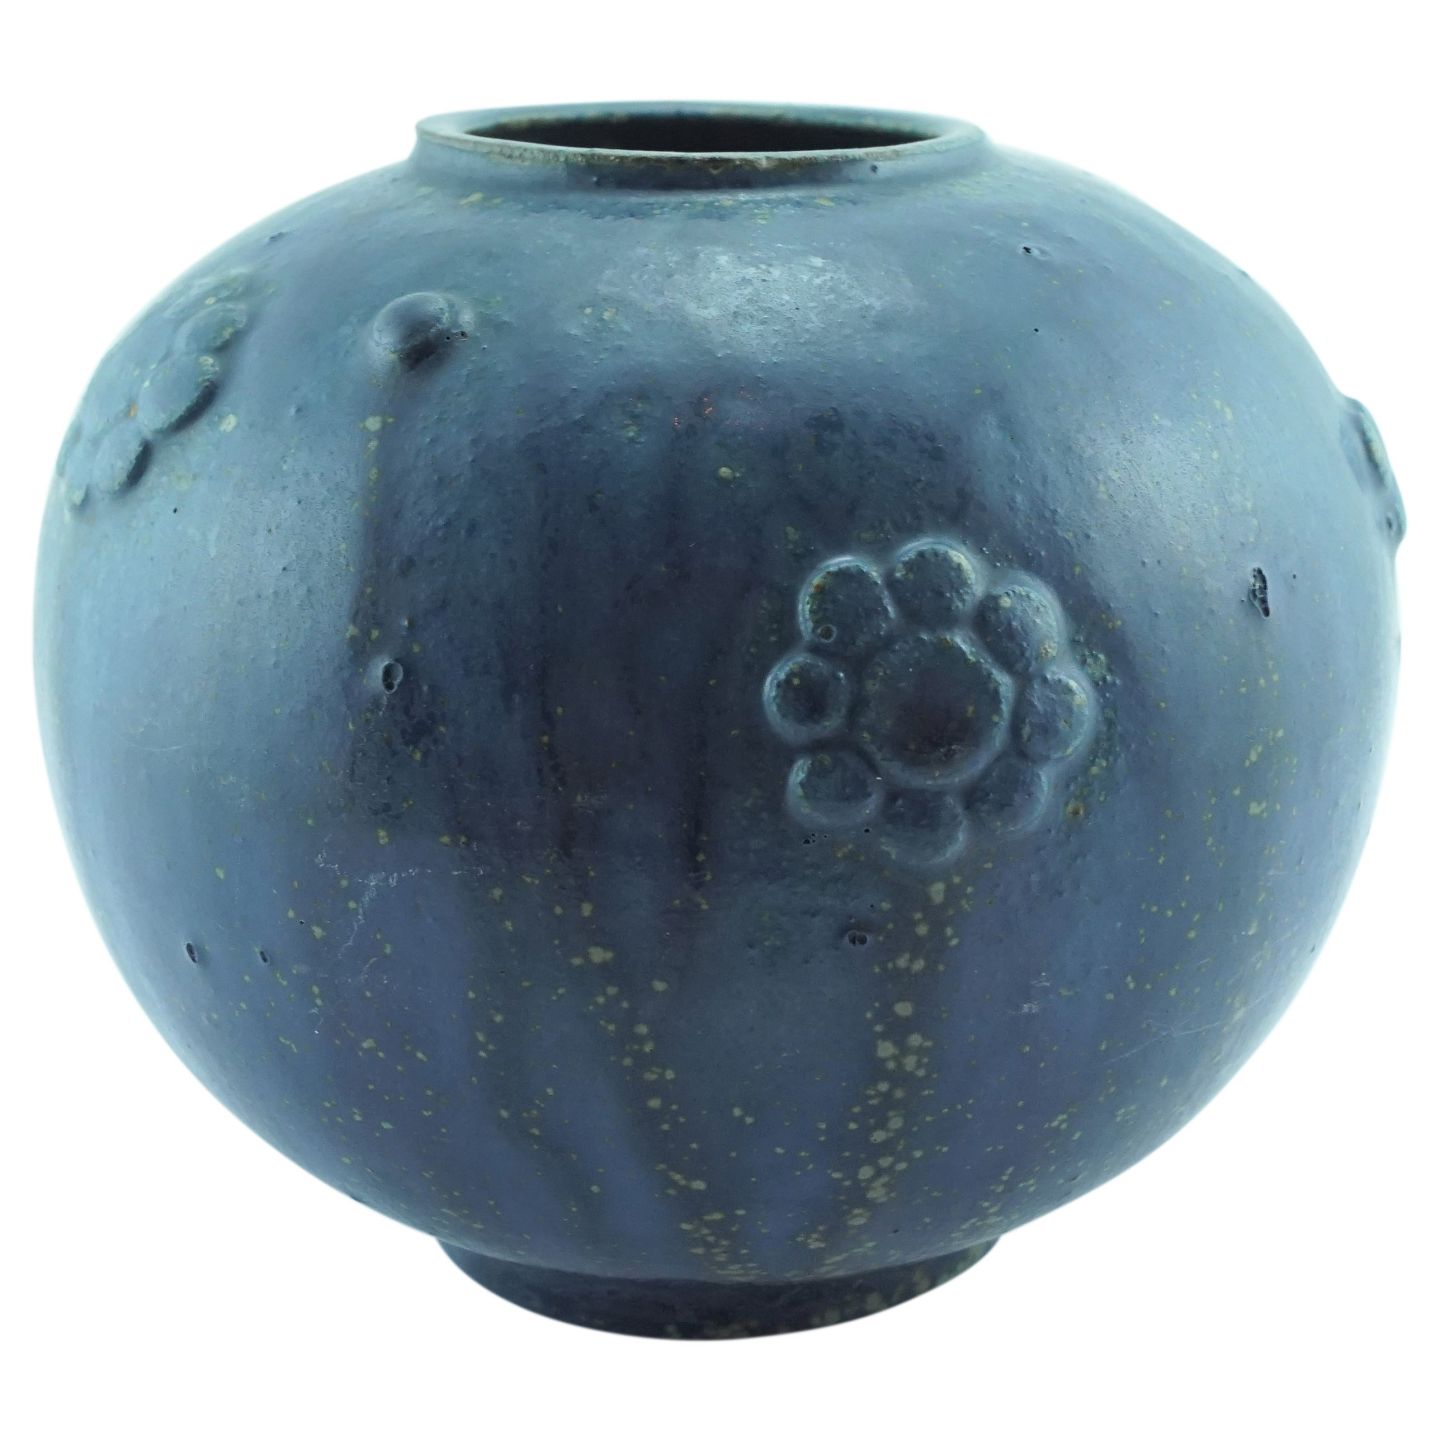 køleskab indlysende Gæsterne KAD ringen - Arne Bang; A round stoneware vase #212 - Arne Bang; A round  stoneware vase #212